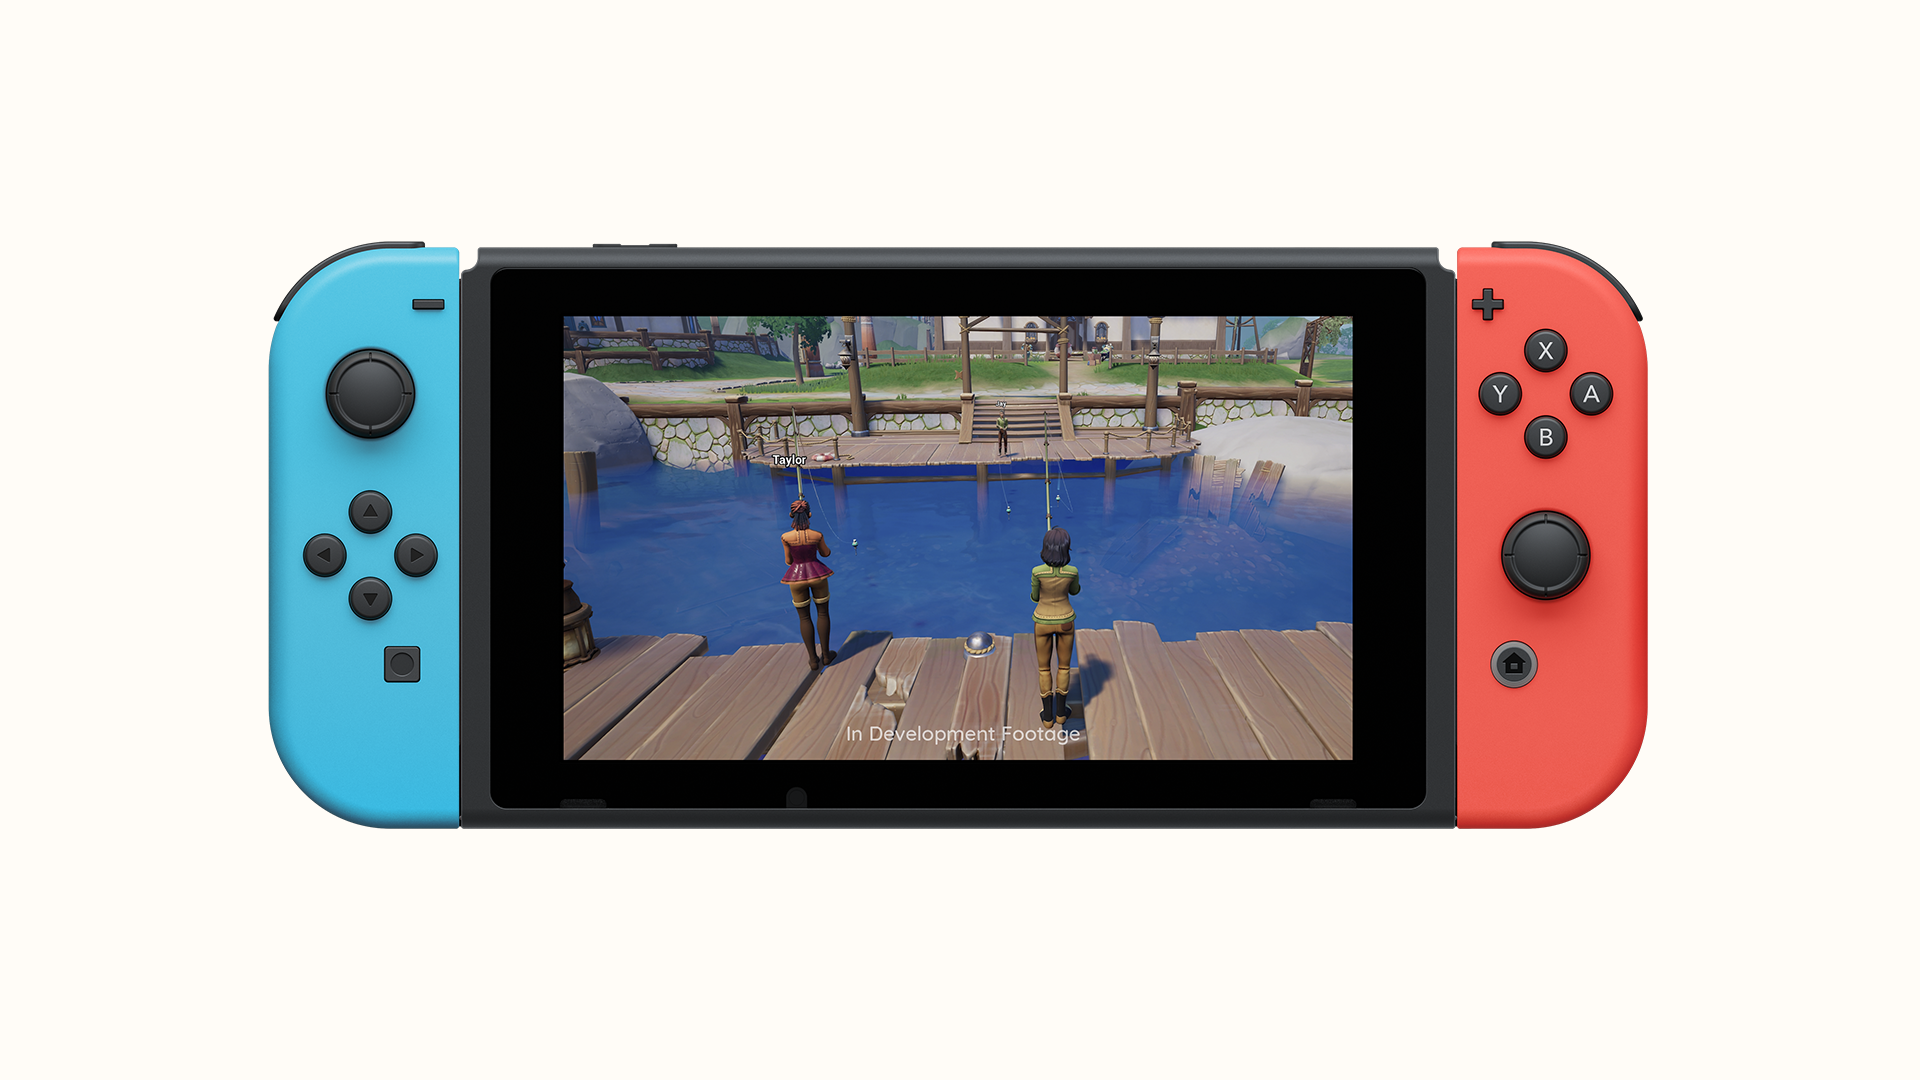 Nintendo Entertainment System – Nintendo Switch Online, Aplicações de  download da Nintendo Switch, Jogos